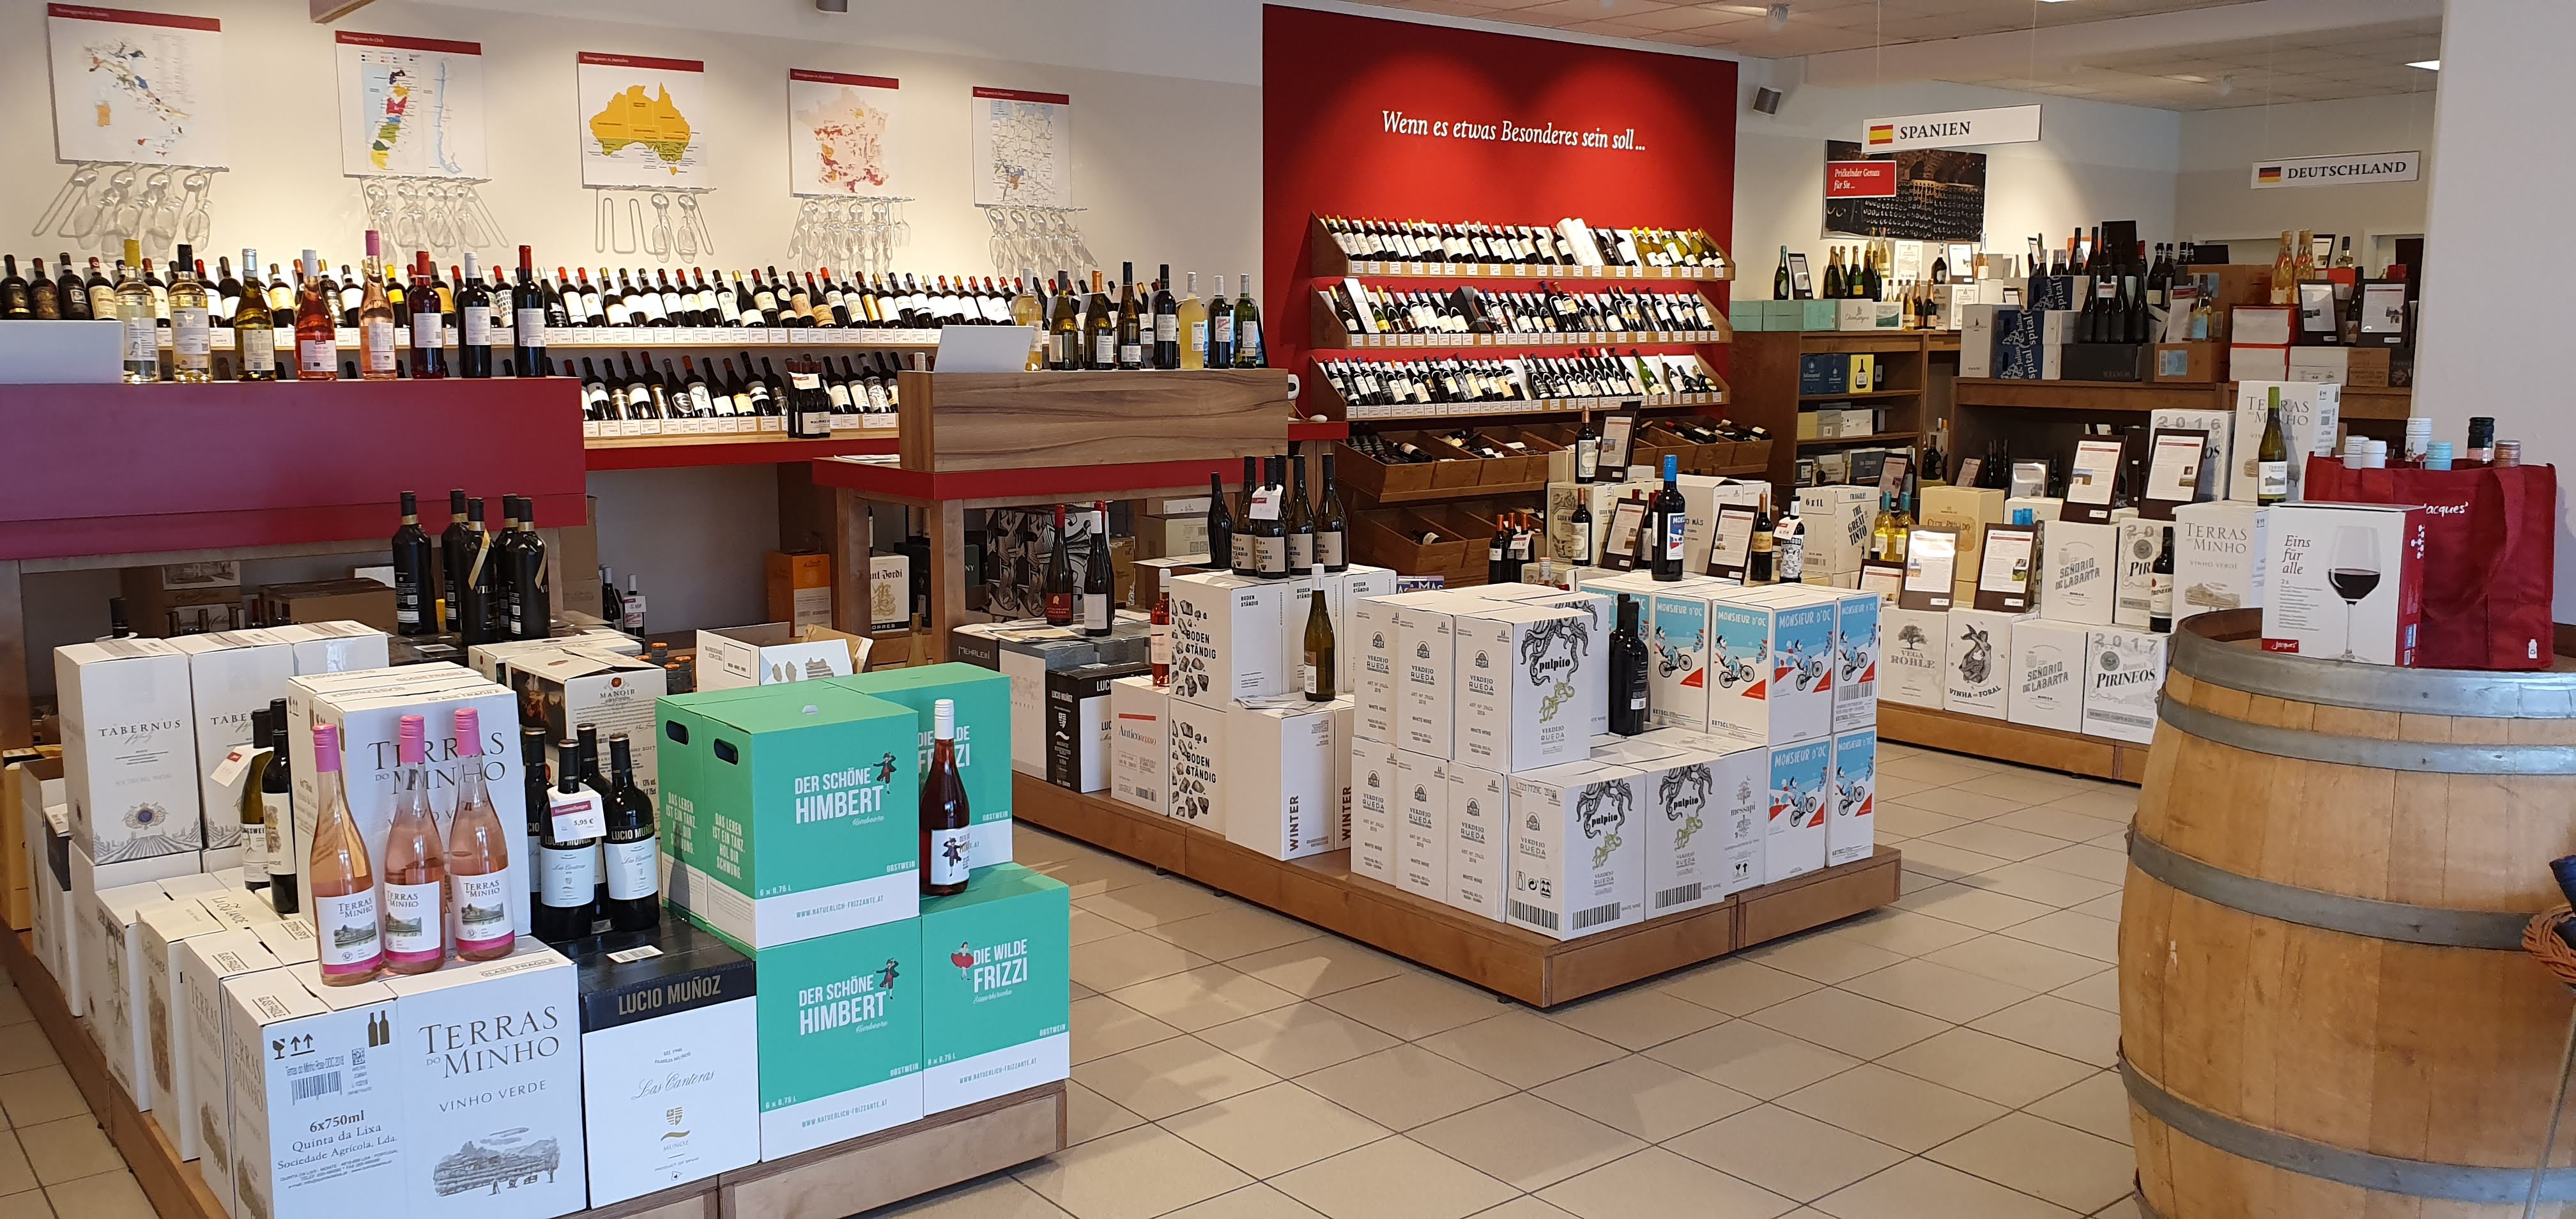 Bilder Jacques’ Wein-Depot Unterschleißheim